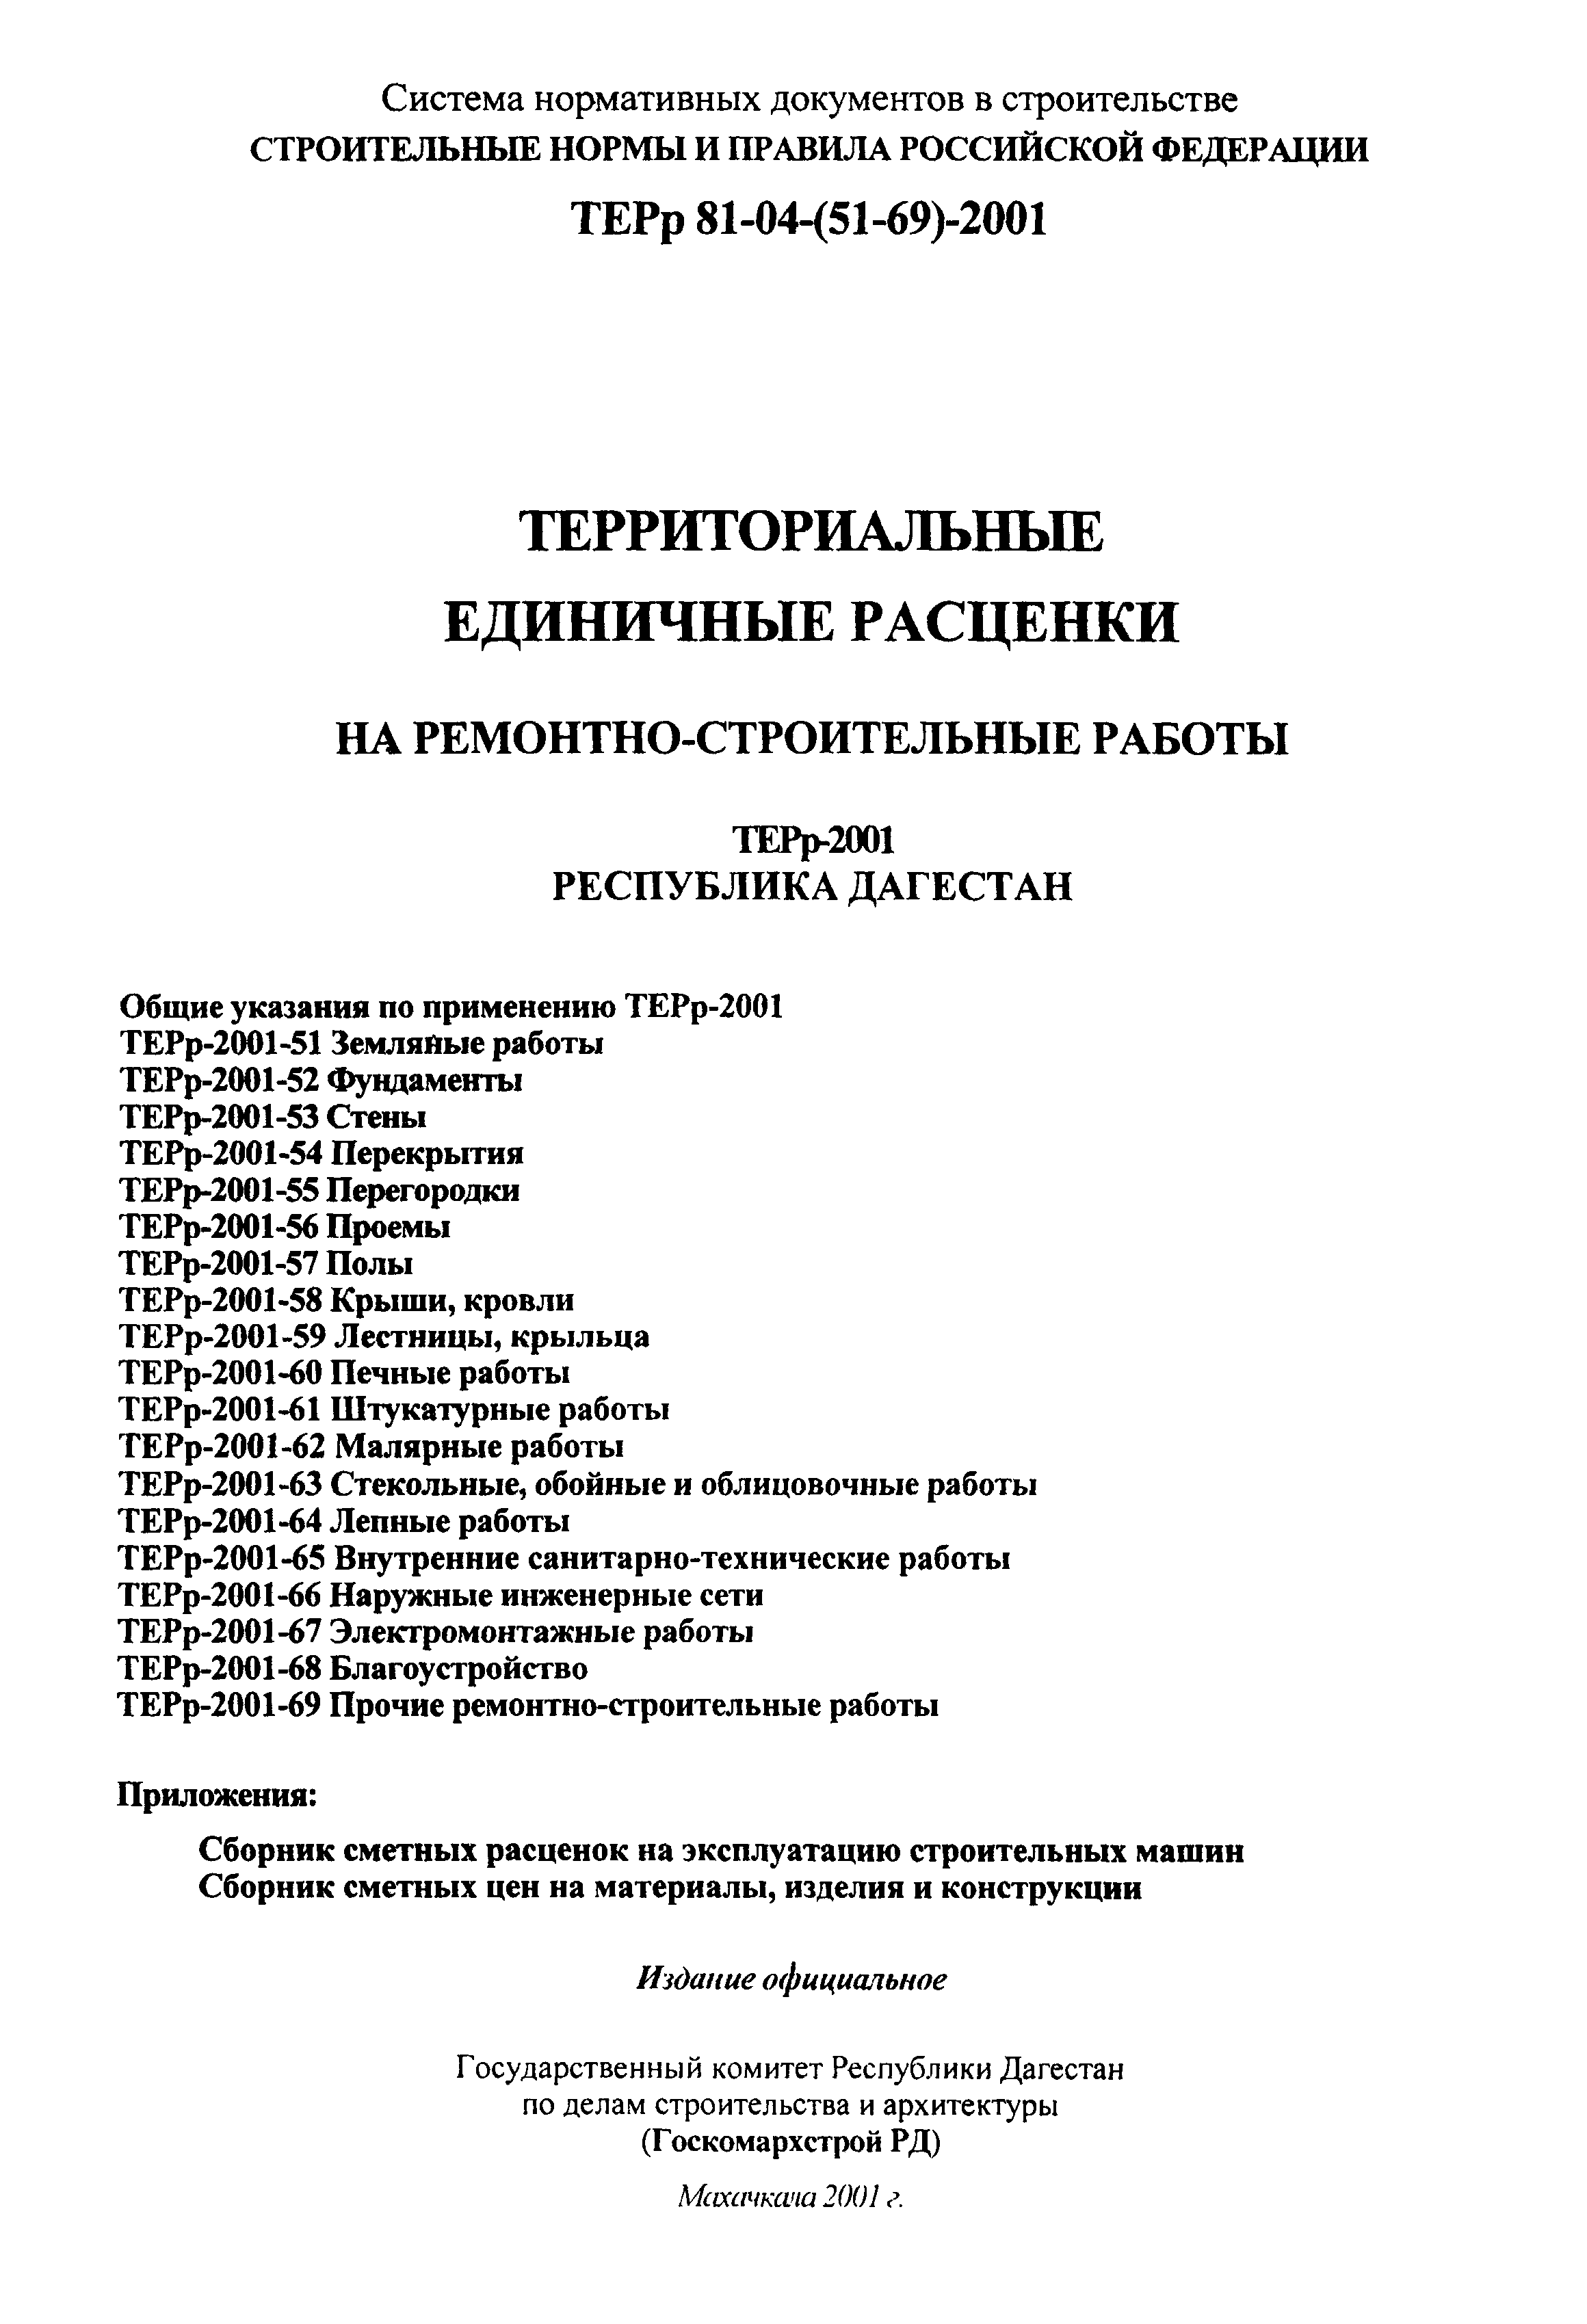 ТЕРр Республика Дагестан 2001-67